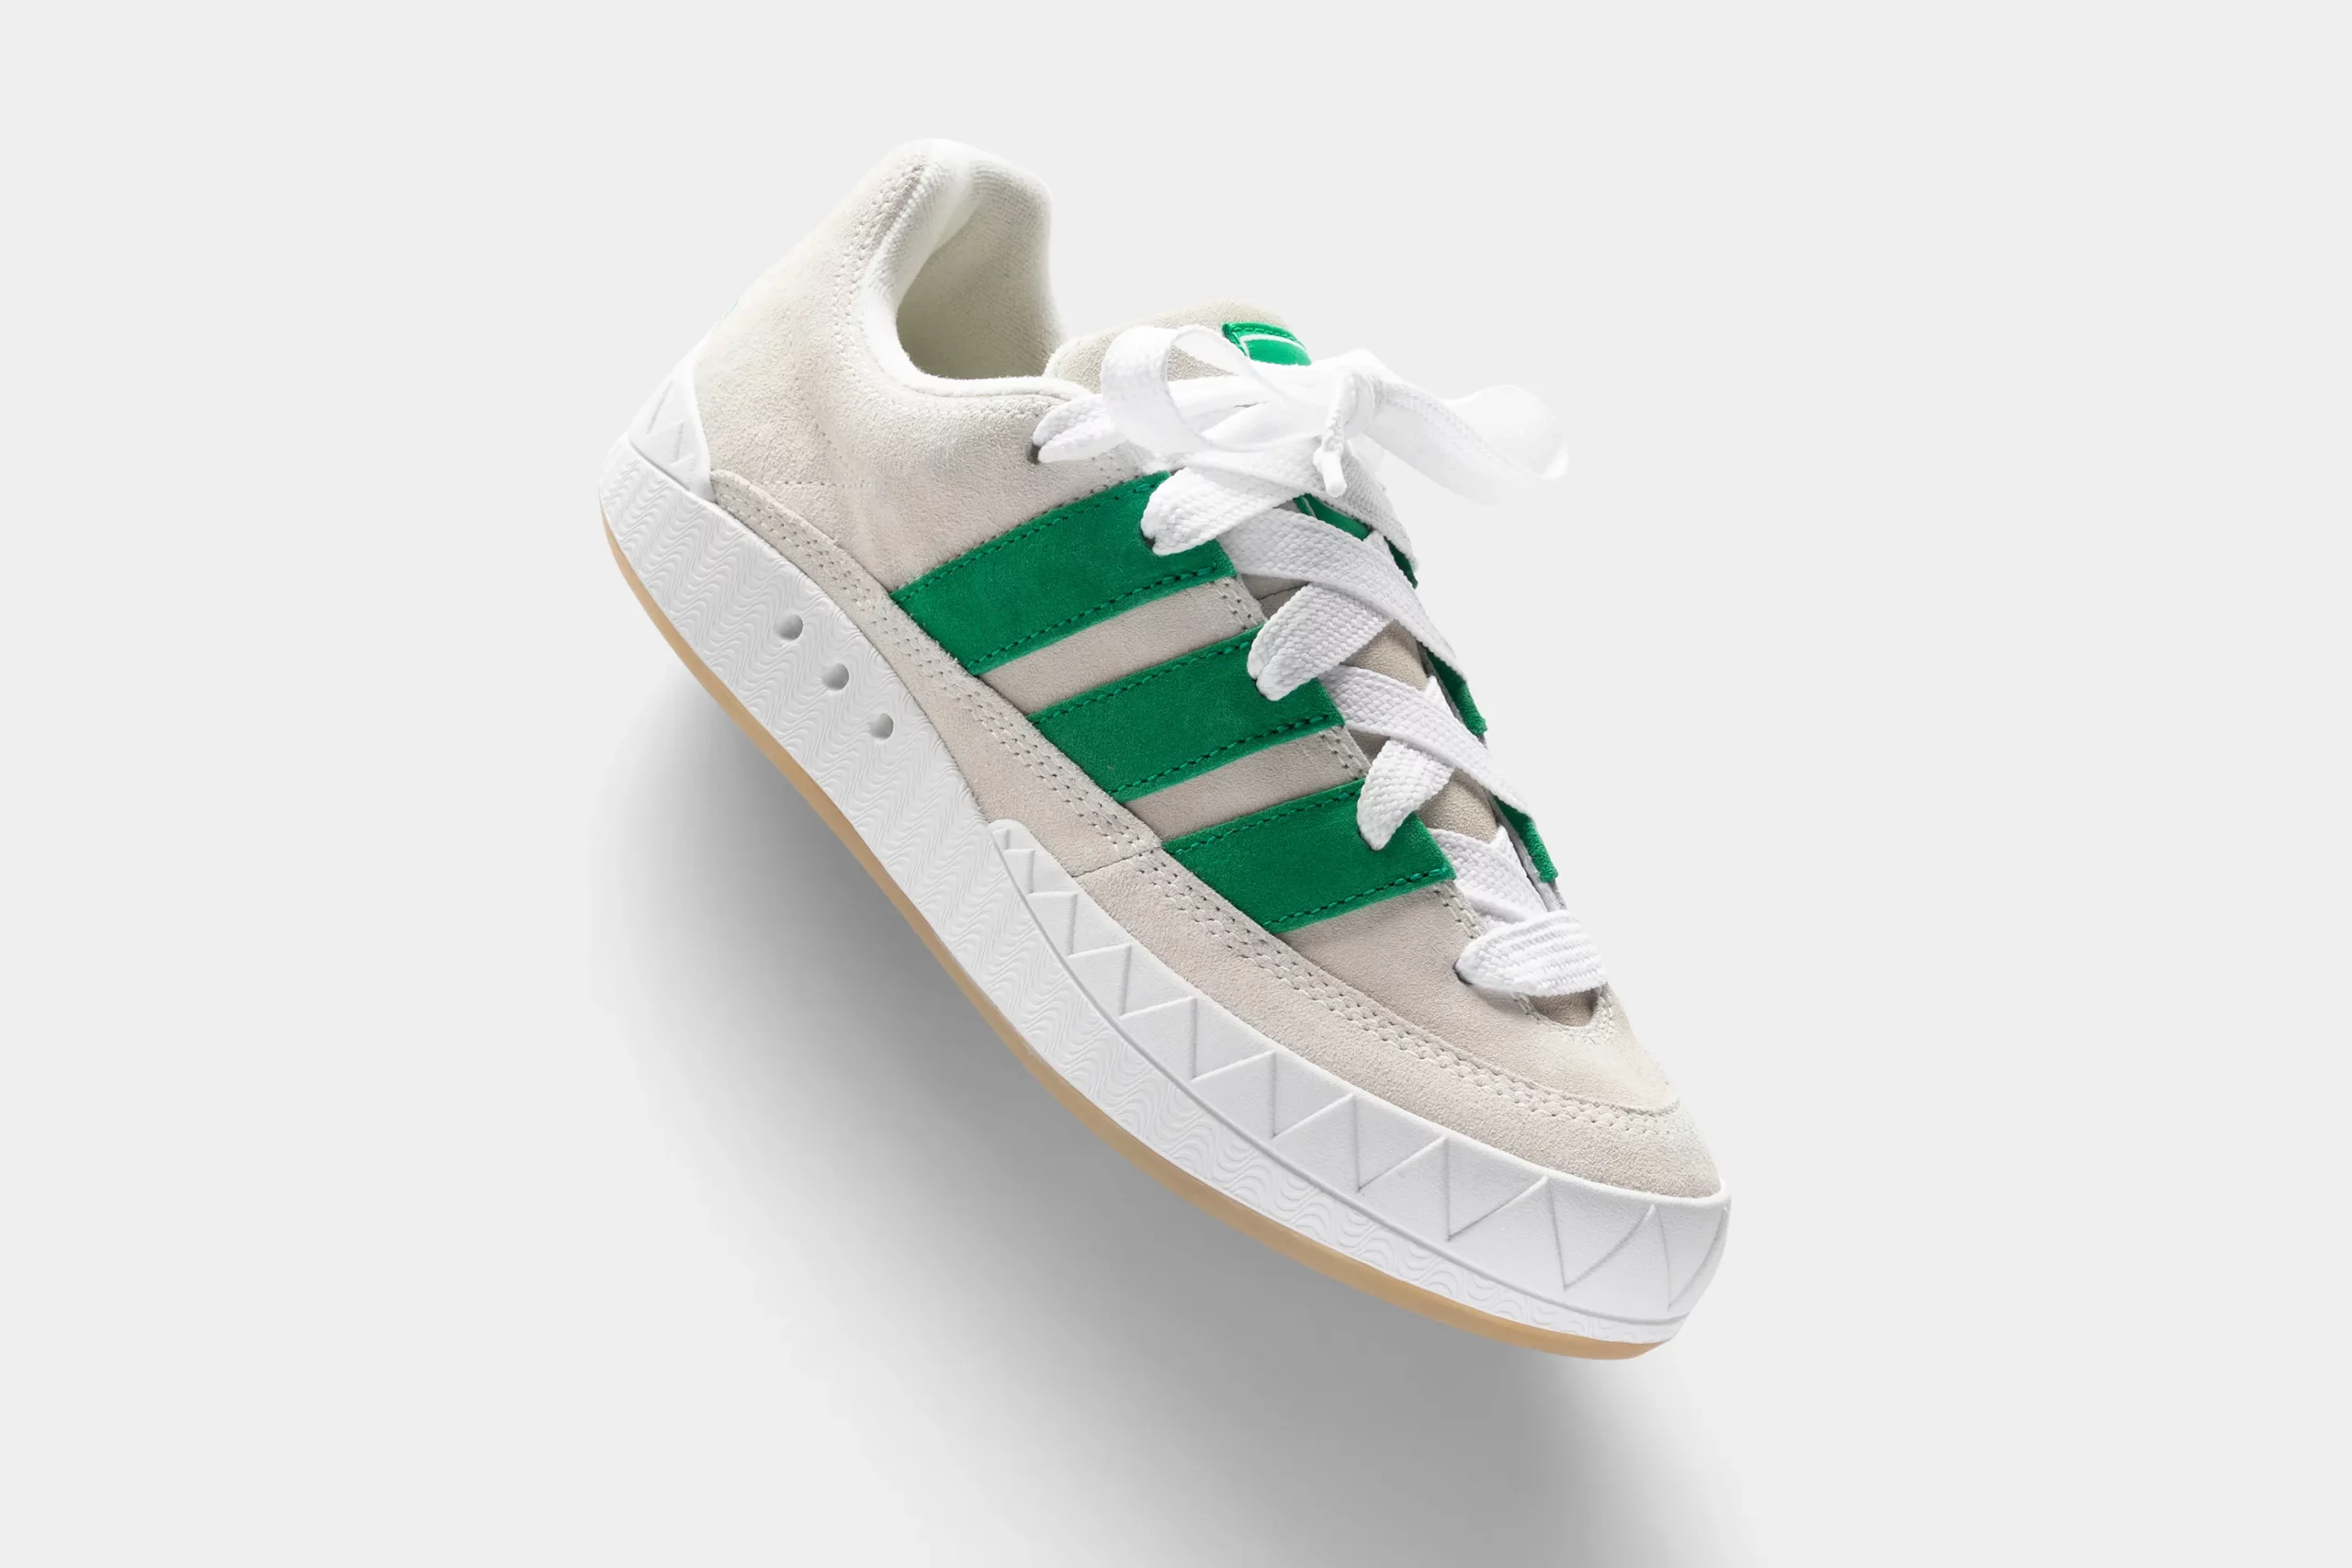 adidas Adimatic Bodega X Beams Off White/ Green/ Crystal White van boven gefotografeerd de zijkant van de schoen is te zien met witte achtergrond